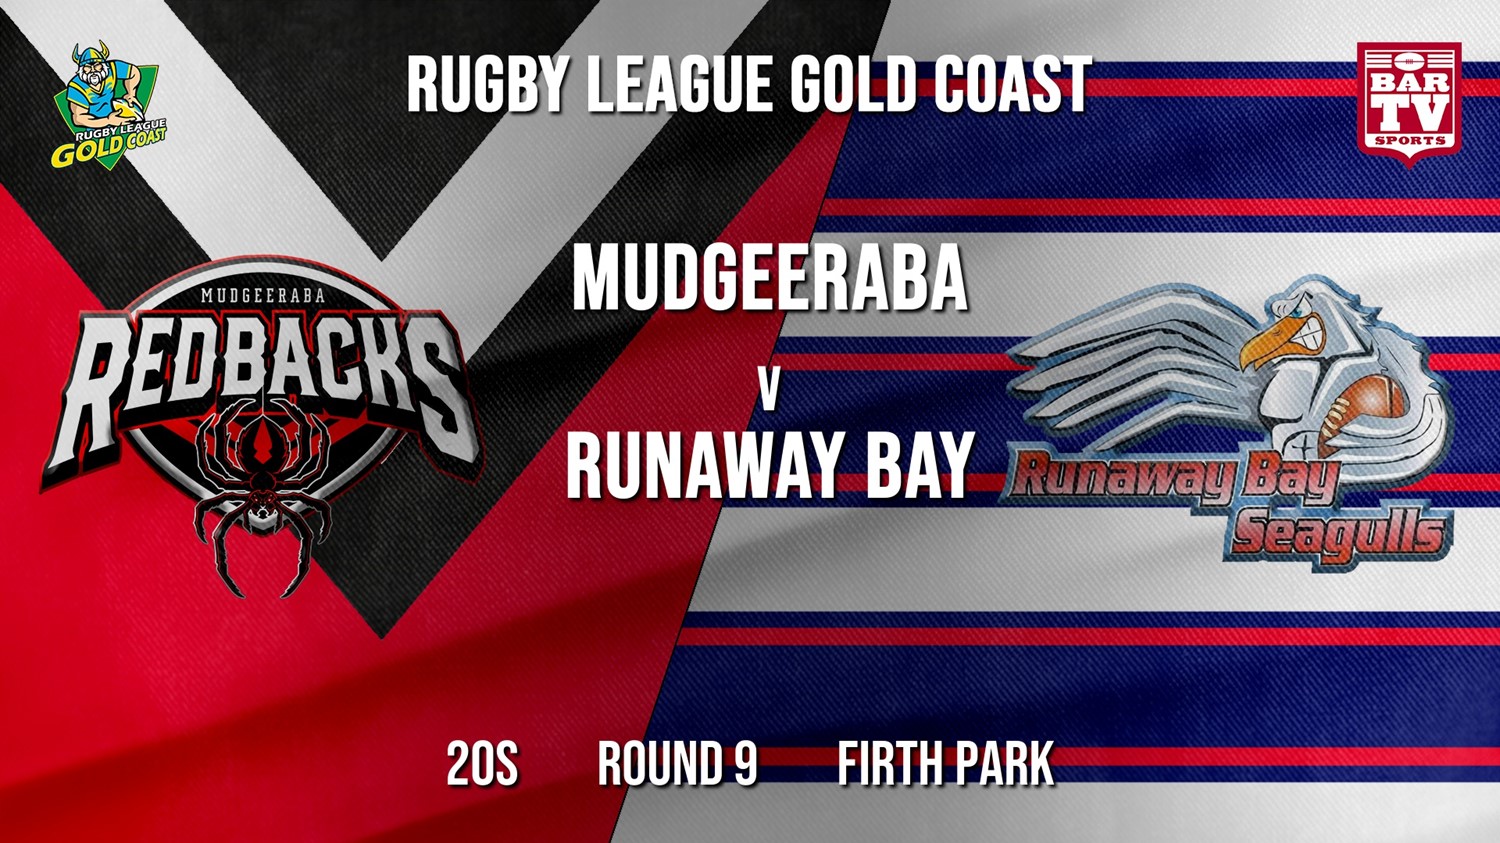 RLGC Round 9 - 20s - Mudgeeraba Redbacks v Runaway Bay Slate Image